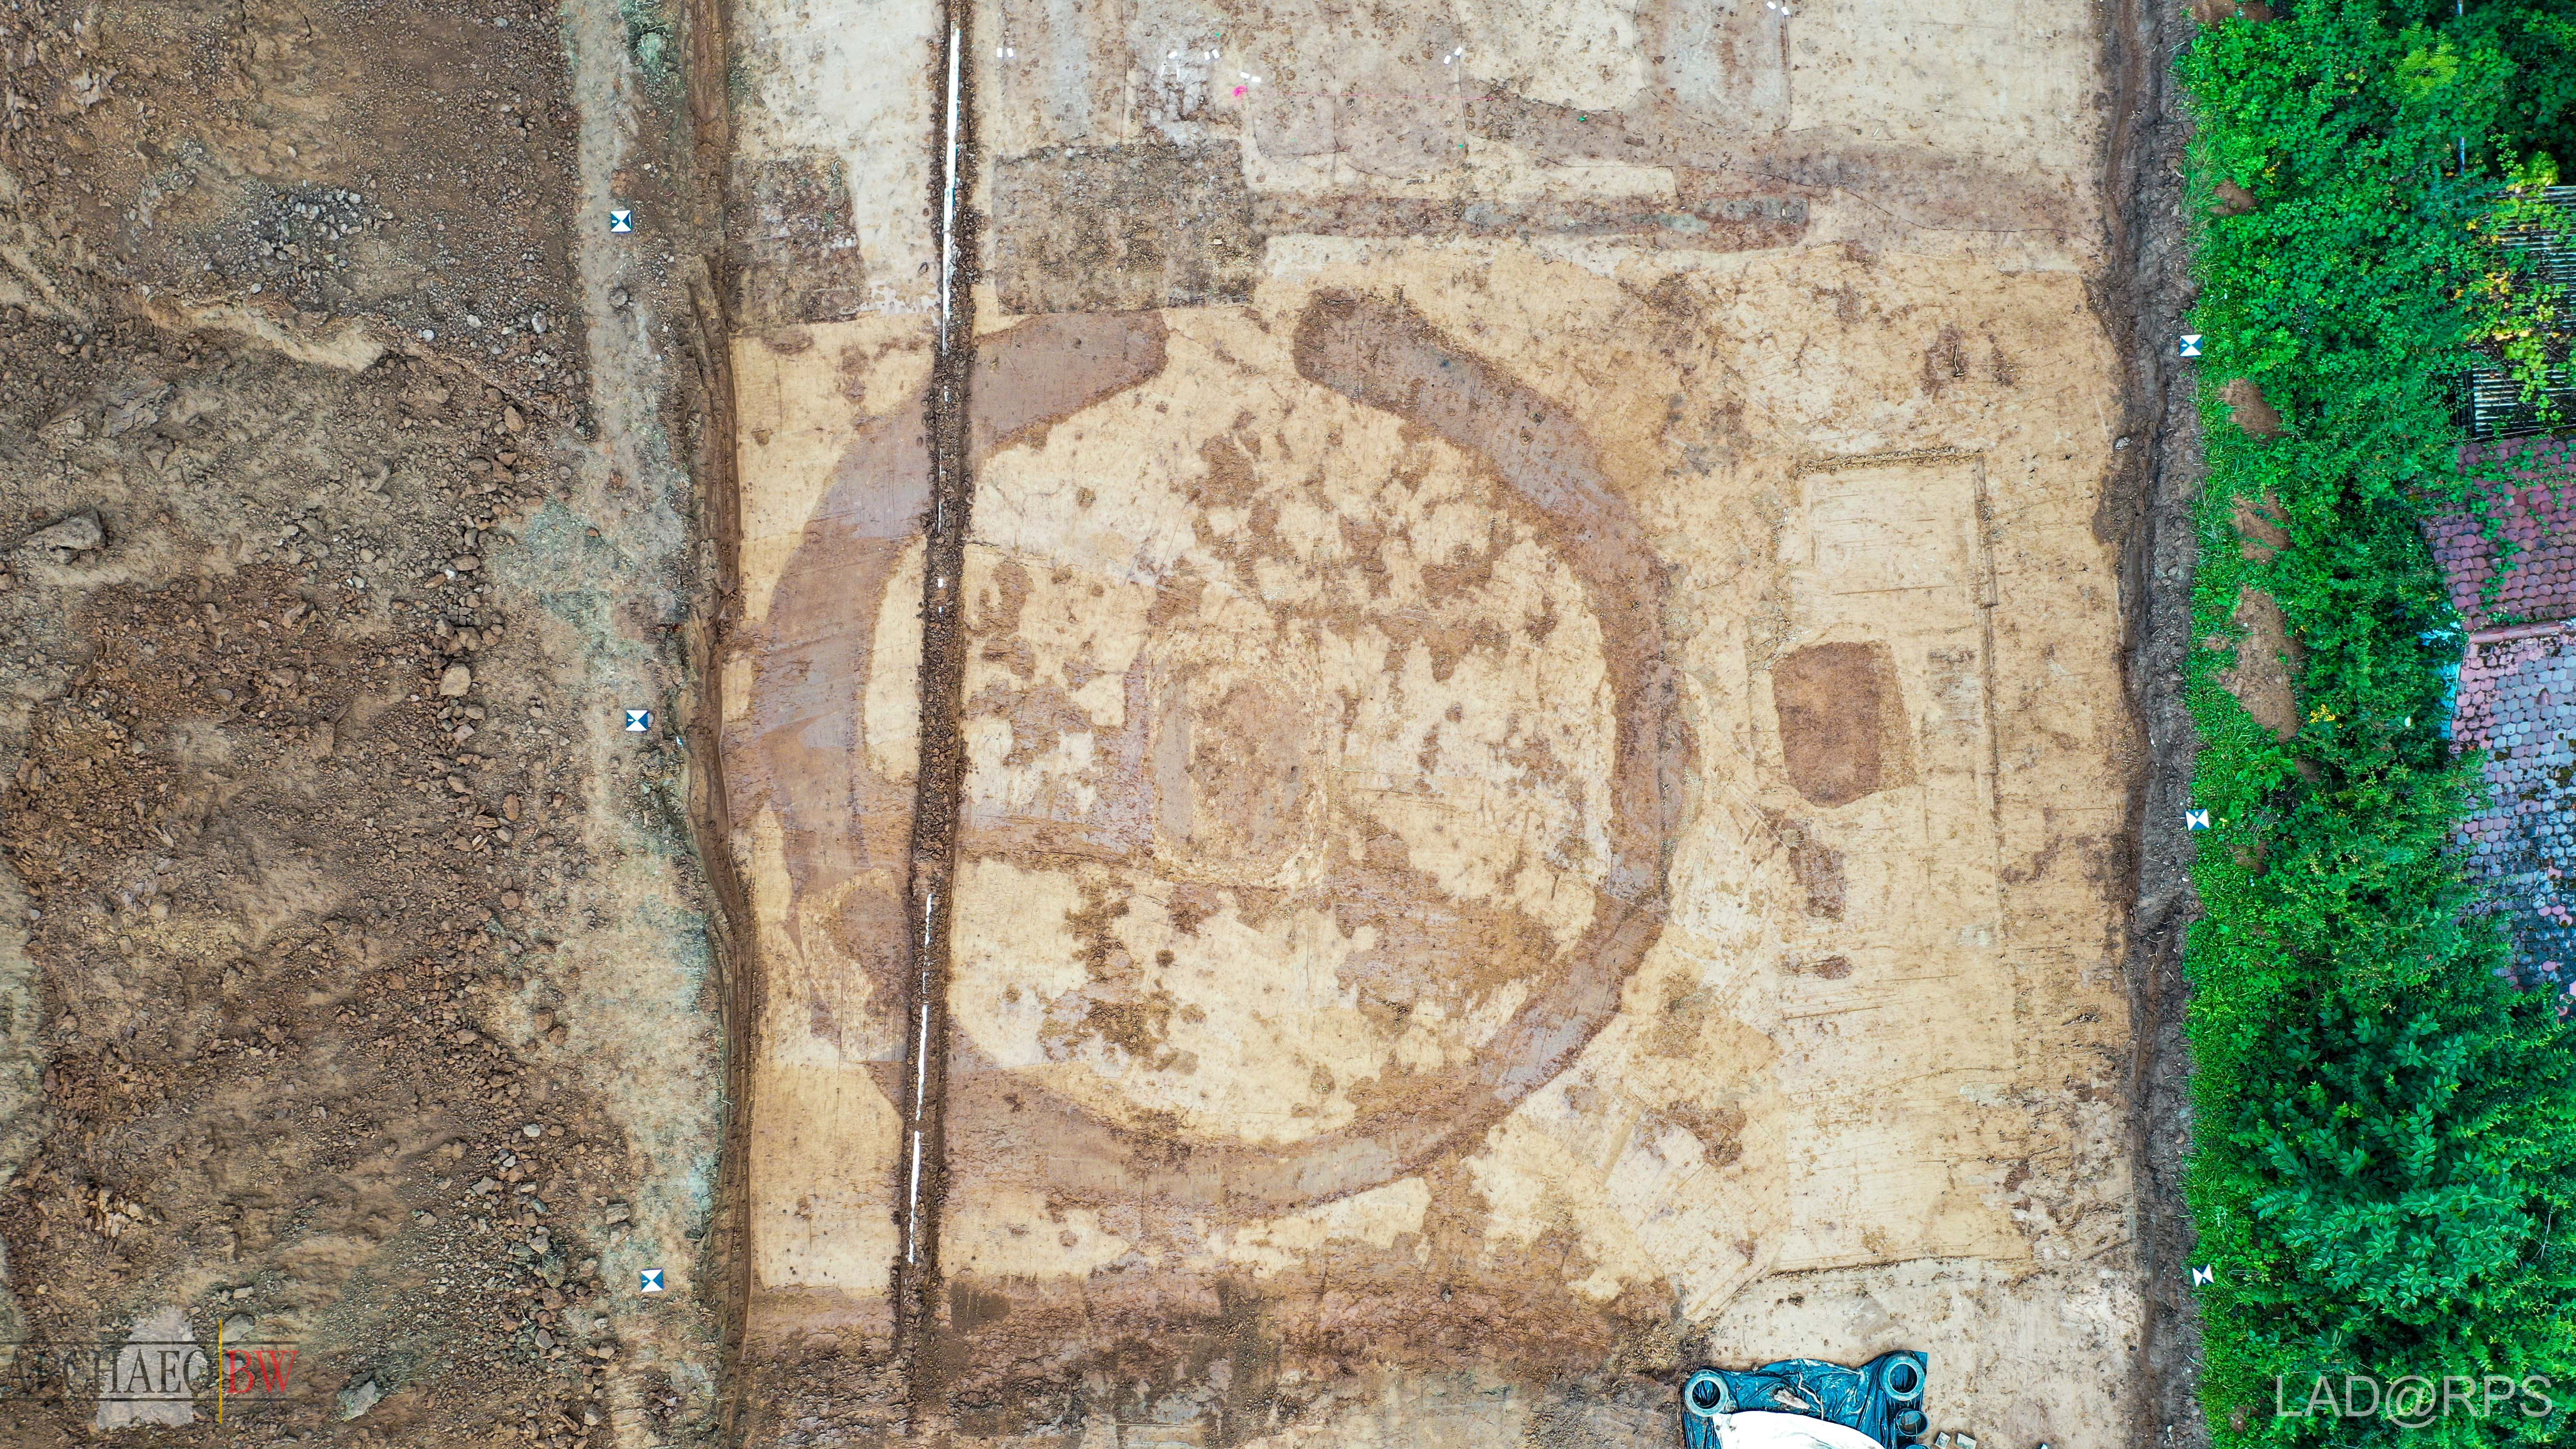 Arqueólogos localizaram 110 sepulturas medievais da elite merovíngia no cemitério (Foto: Baden-Wuerttemberg State Office for Monument Preservation)